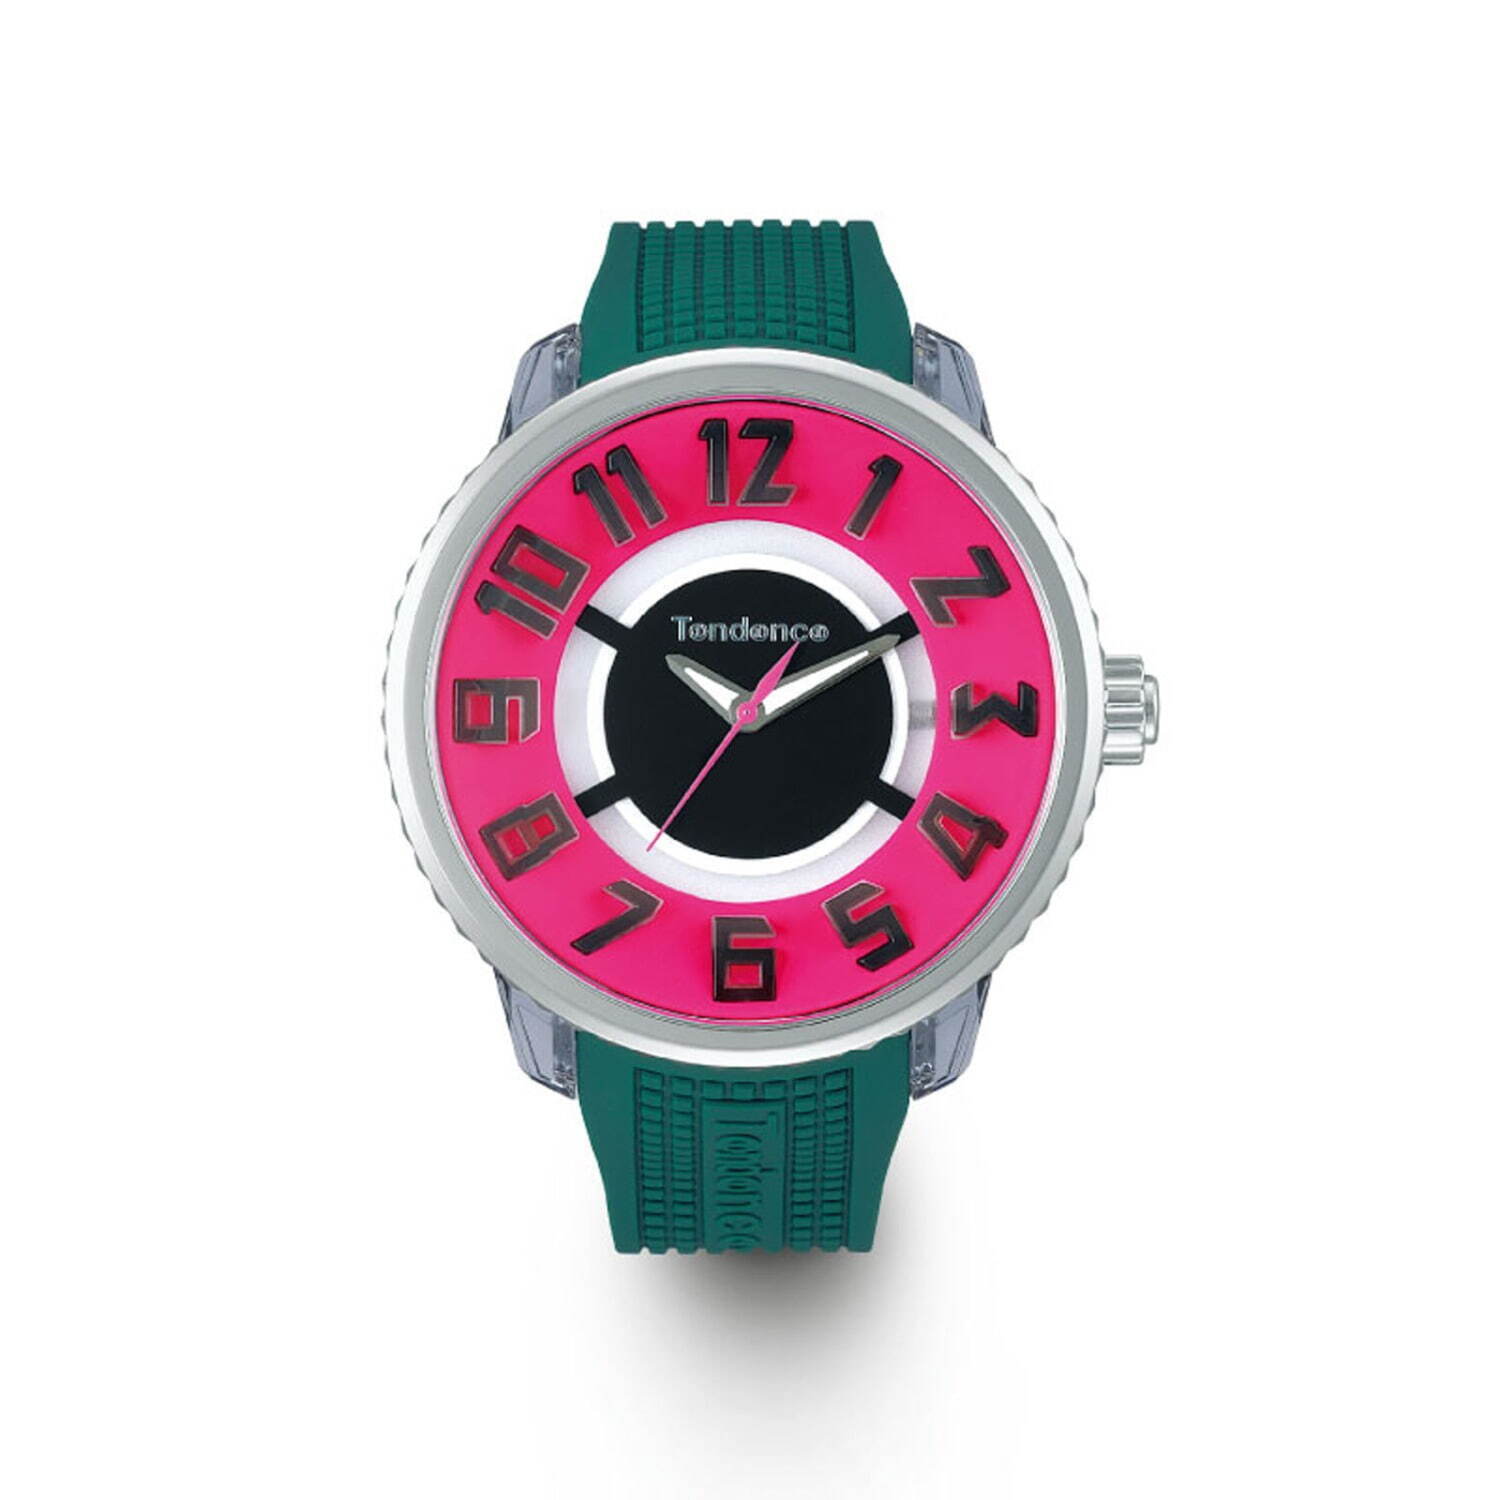 テンデンス 光る 腕時計 フラッシュ 新作ウォッチ スニーカー着想のカラフルな配色 ファッションプレス